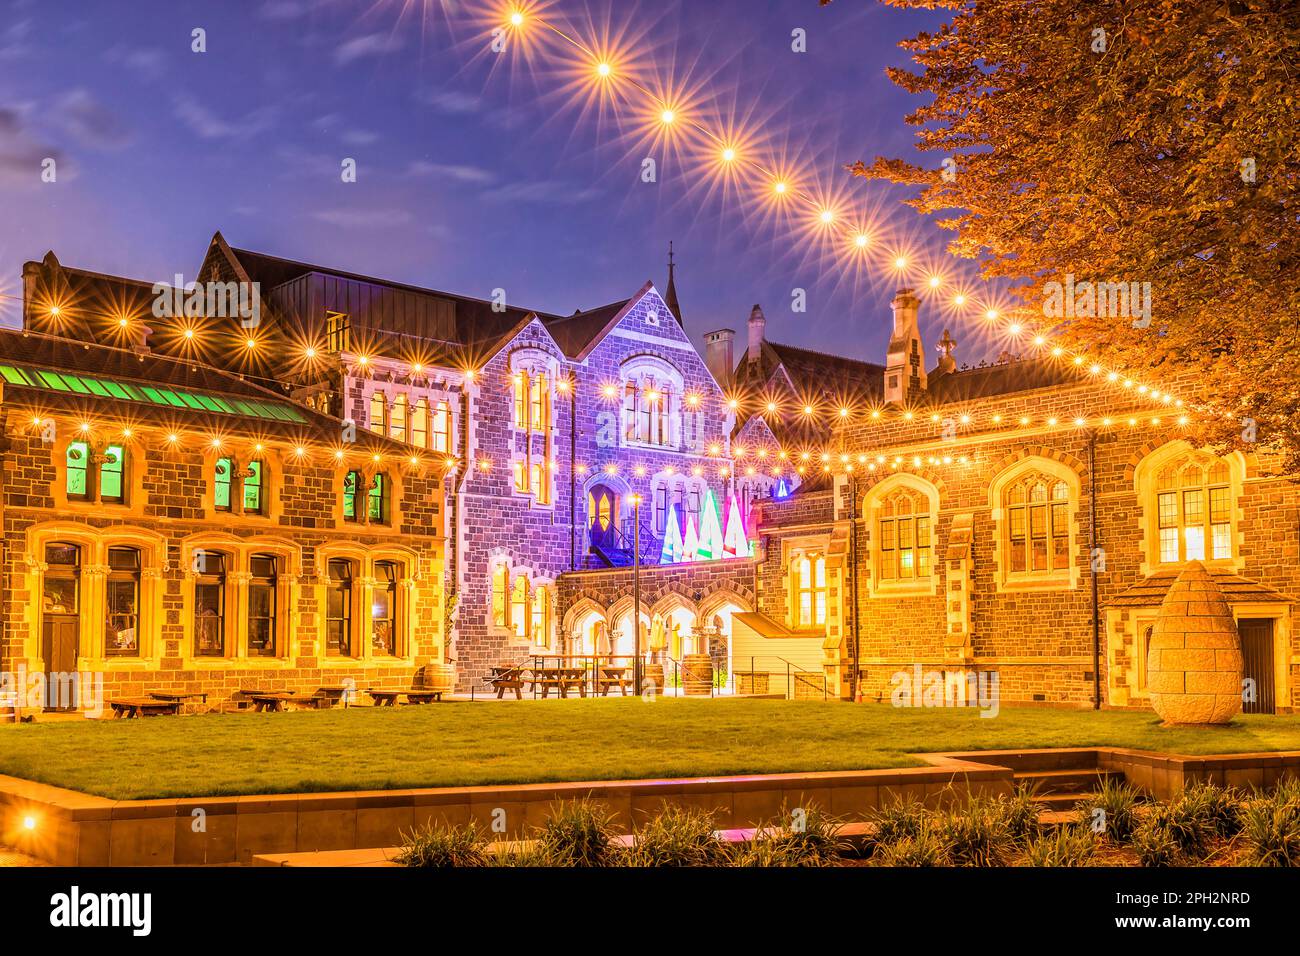 Historisches Architekturviertel des öffentlichen Parks in Christchurch, Neuseeland, bei Weihnachtslichtern, Zeit des Sonnenuntergangs. Stockfoto